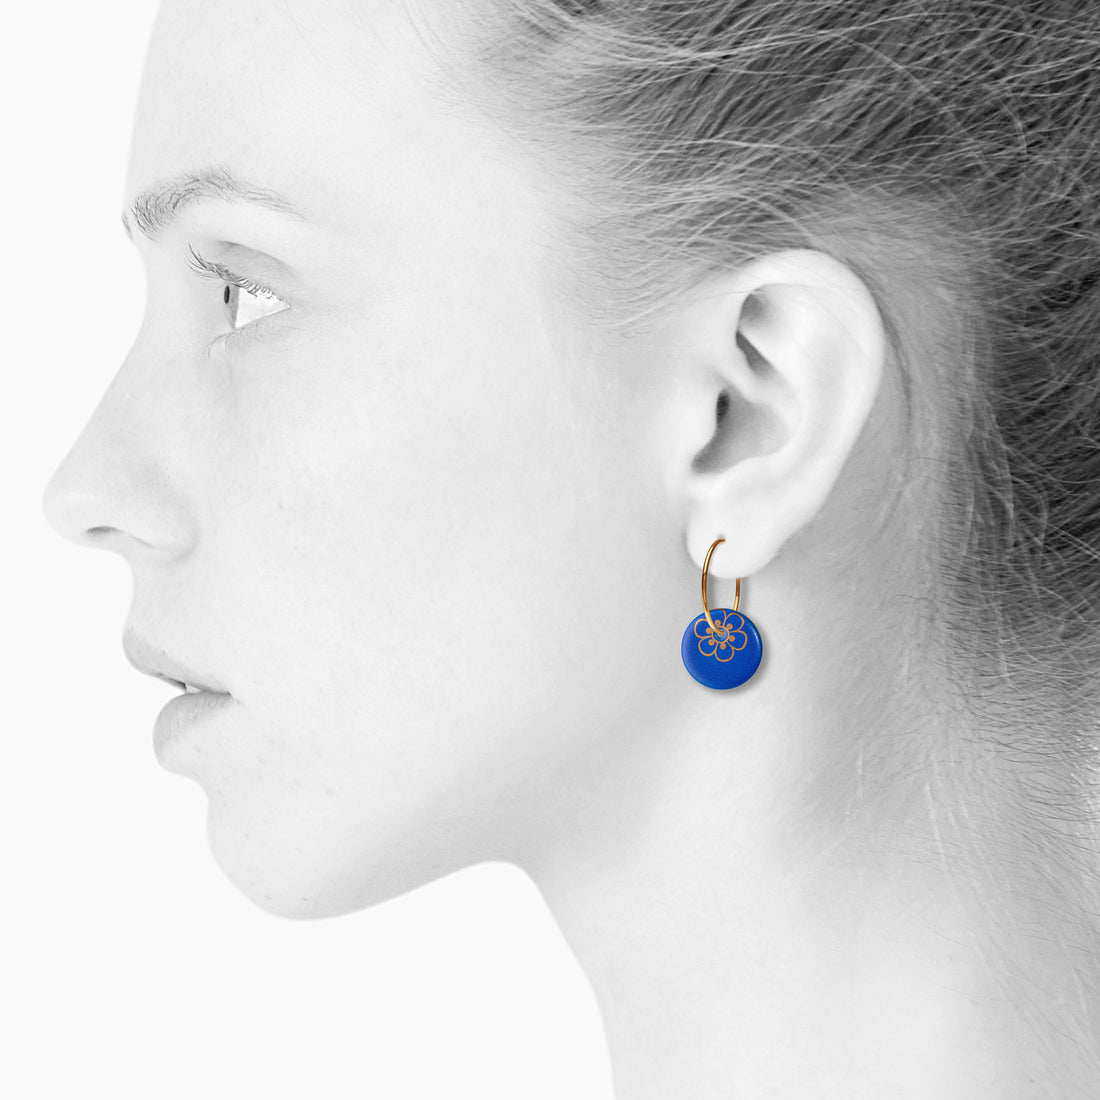 FLORA øreringe, stor - ROYAL BLUE/GOLD - SCHERNING smykker